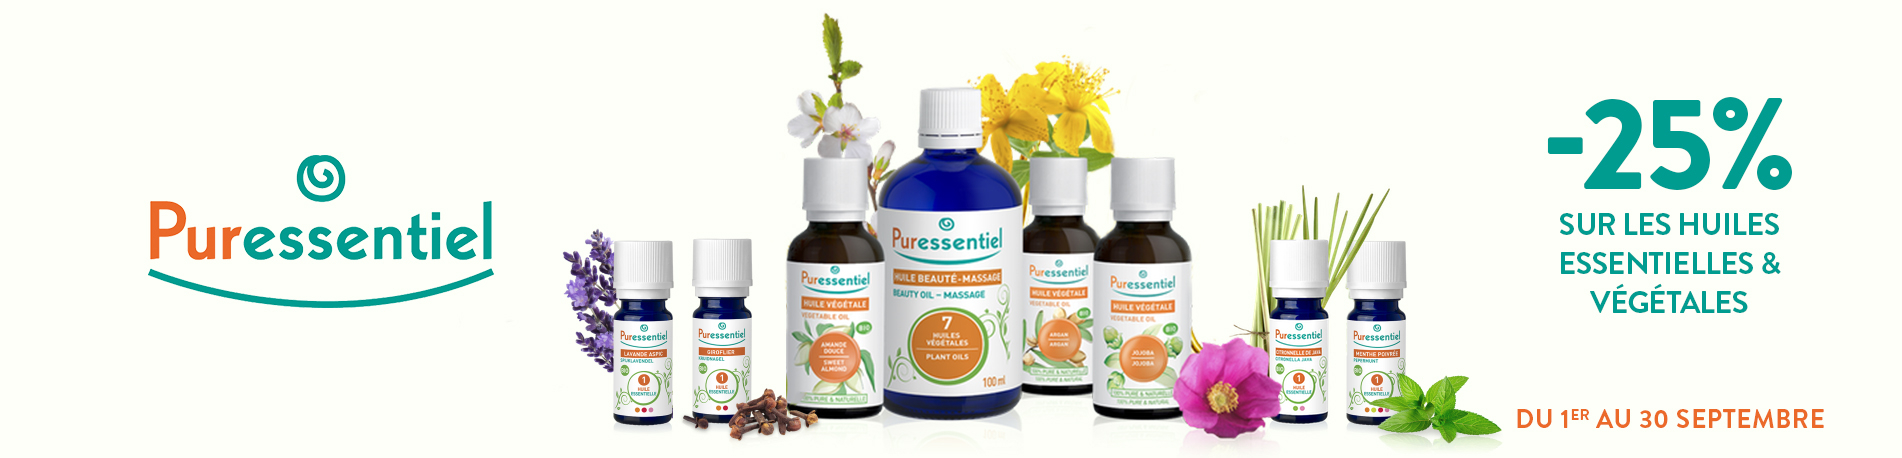 Promotion Puressentiel : Huiles essentielles et huiles végétales